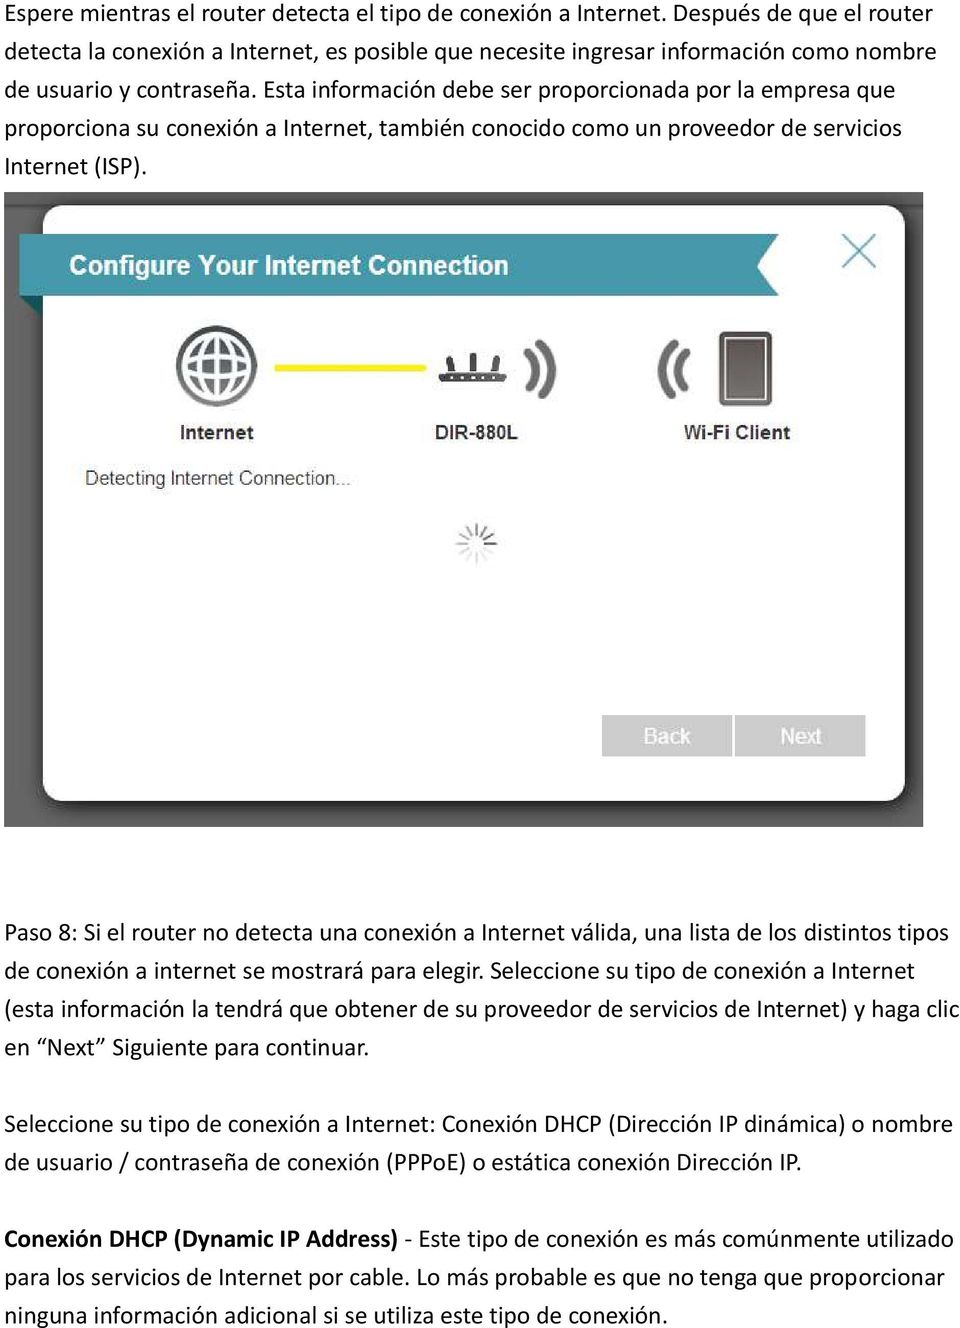 Esta información debe ser proporcionada por la empresa que proporciona su conexión a Internet, también conocido como un proveedor de servicios Internet (ISP).